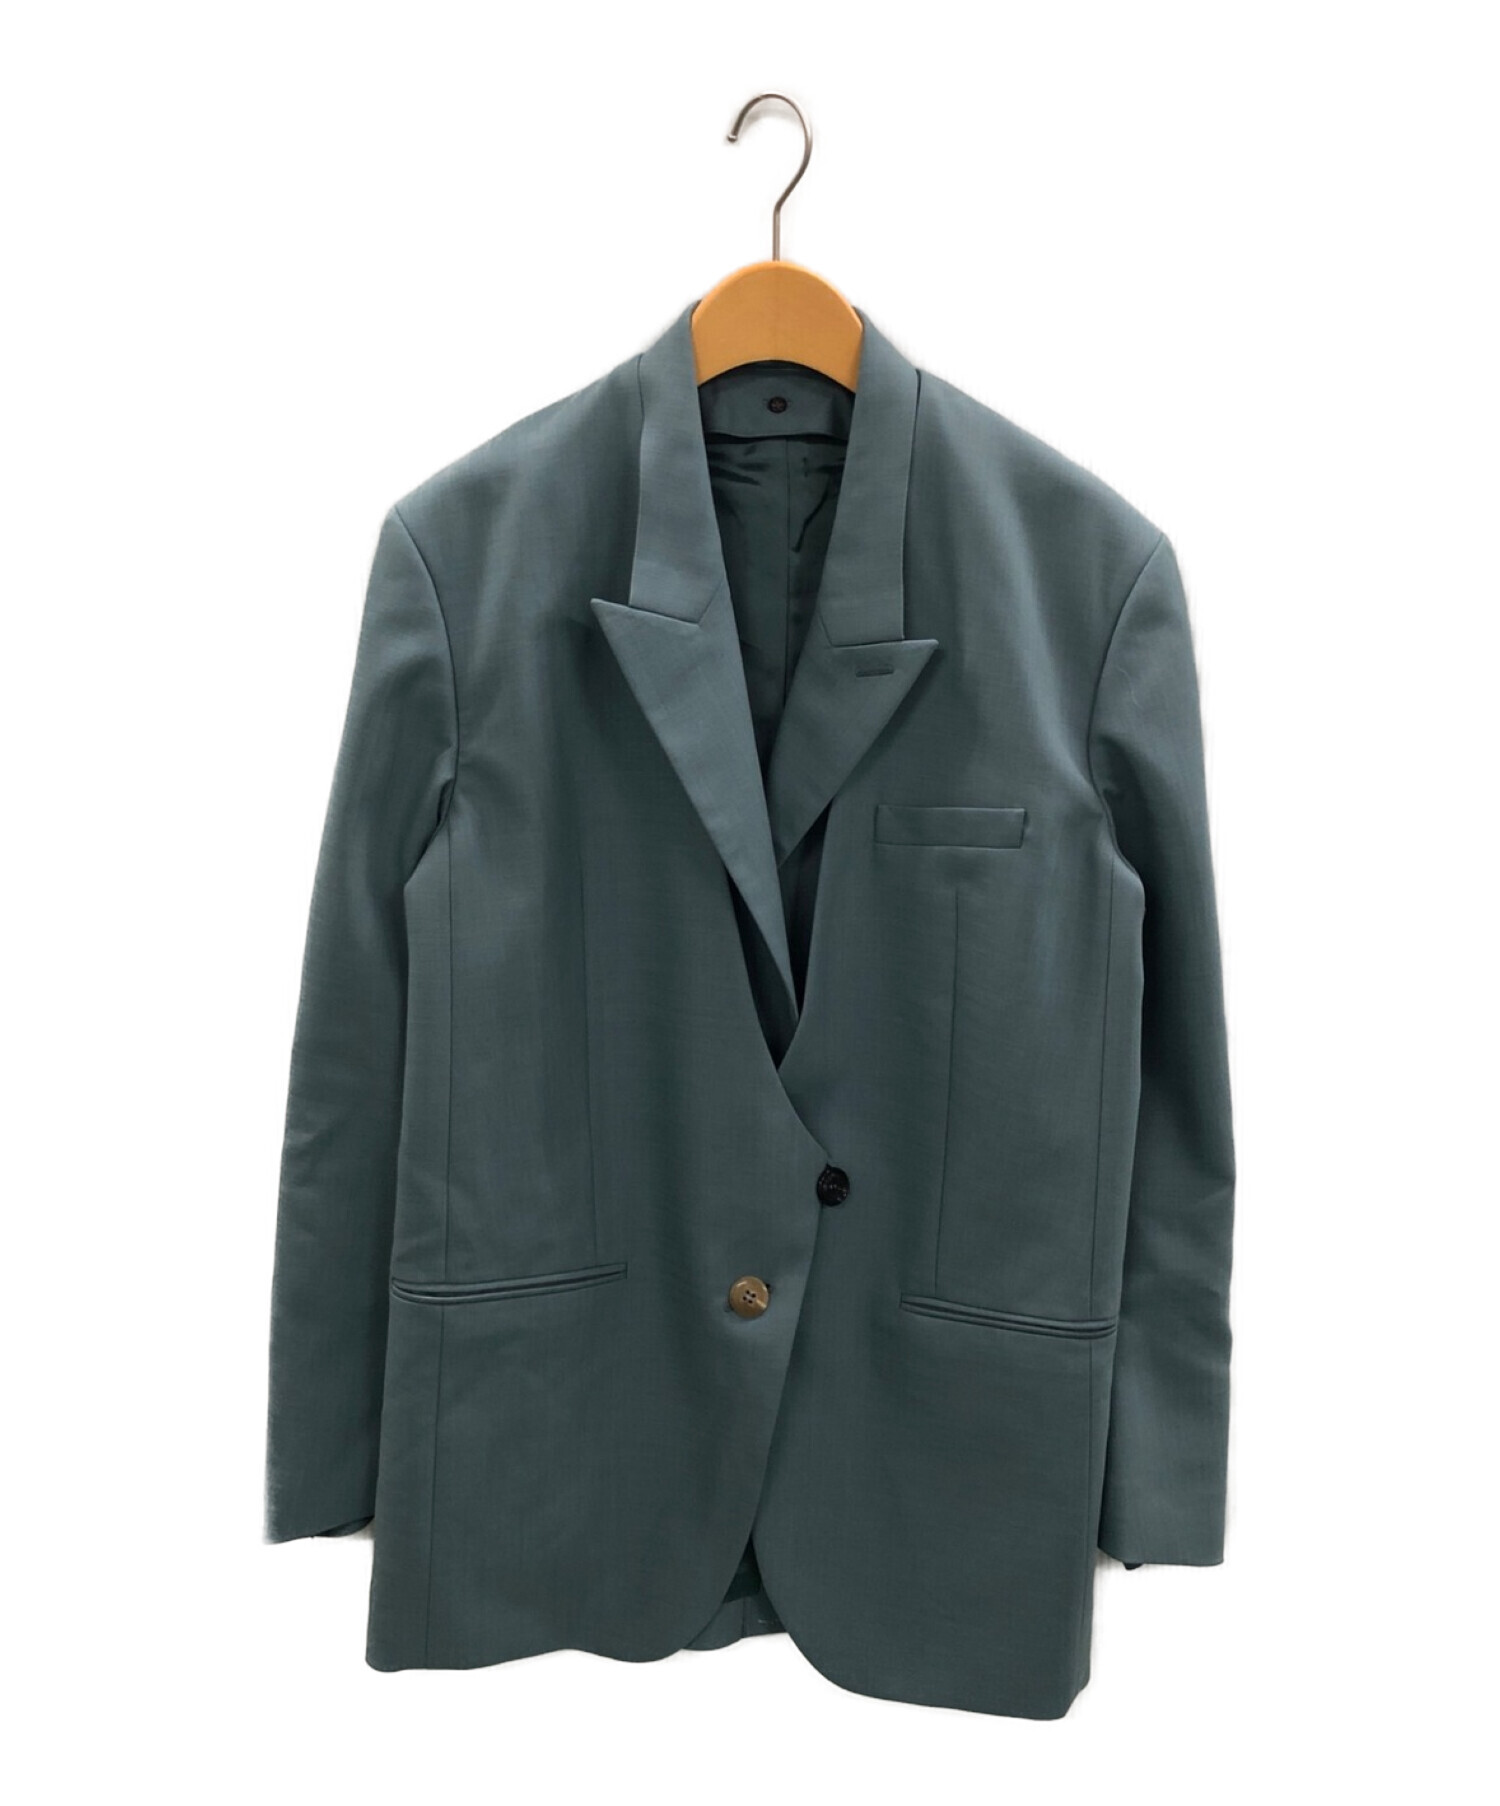 IRENE (アイレネ) Attached Collar Jacket ブルー サイズ:36